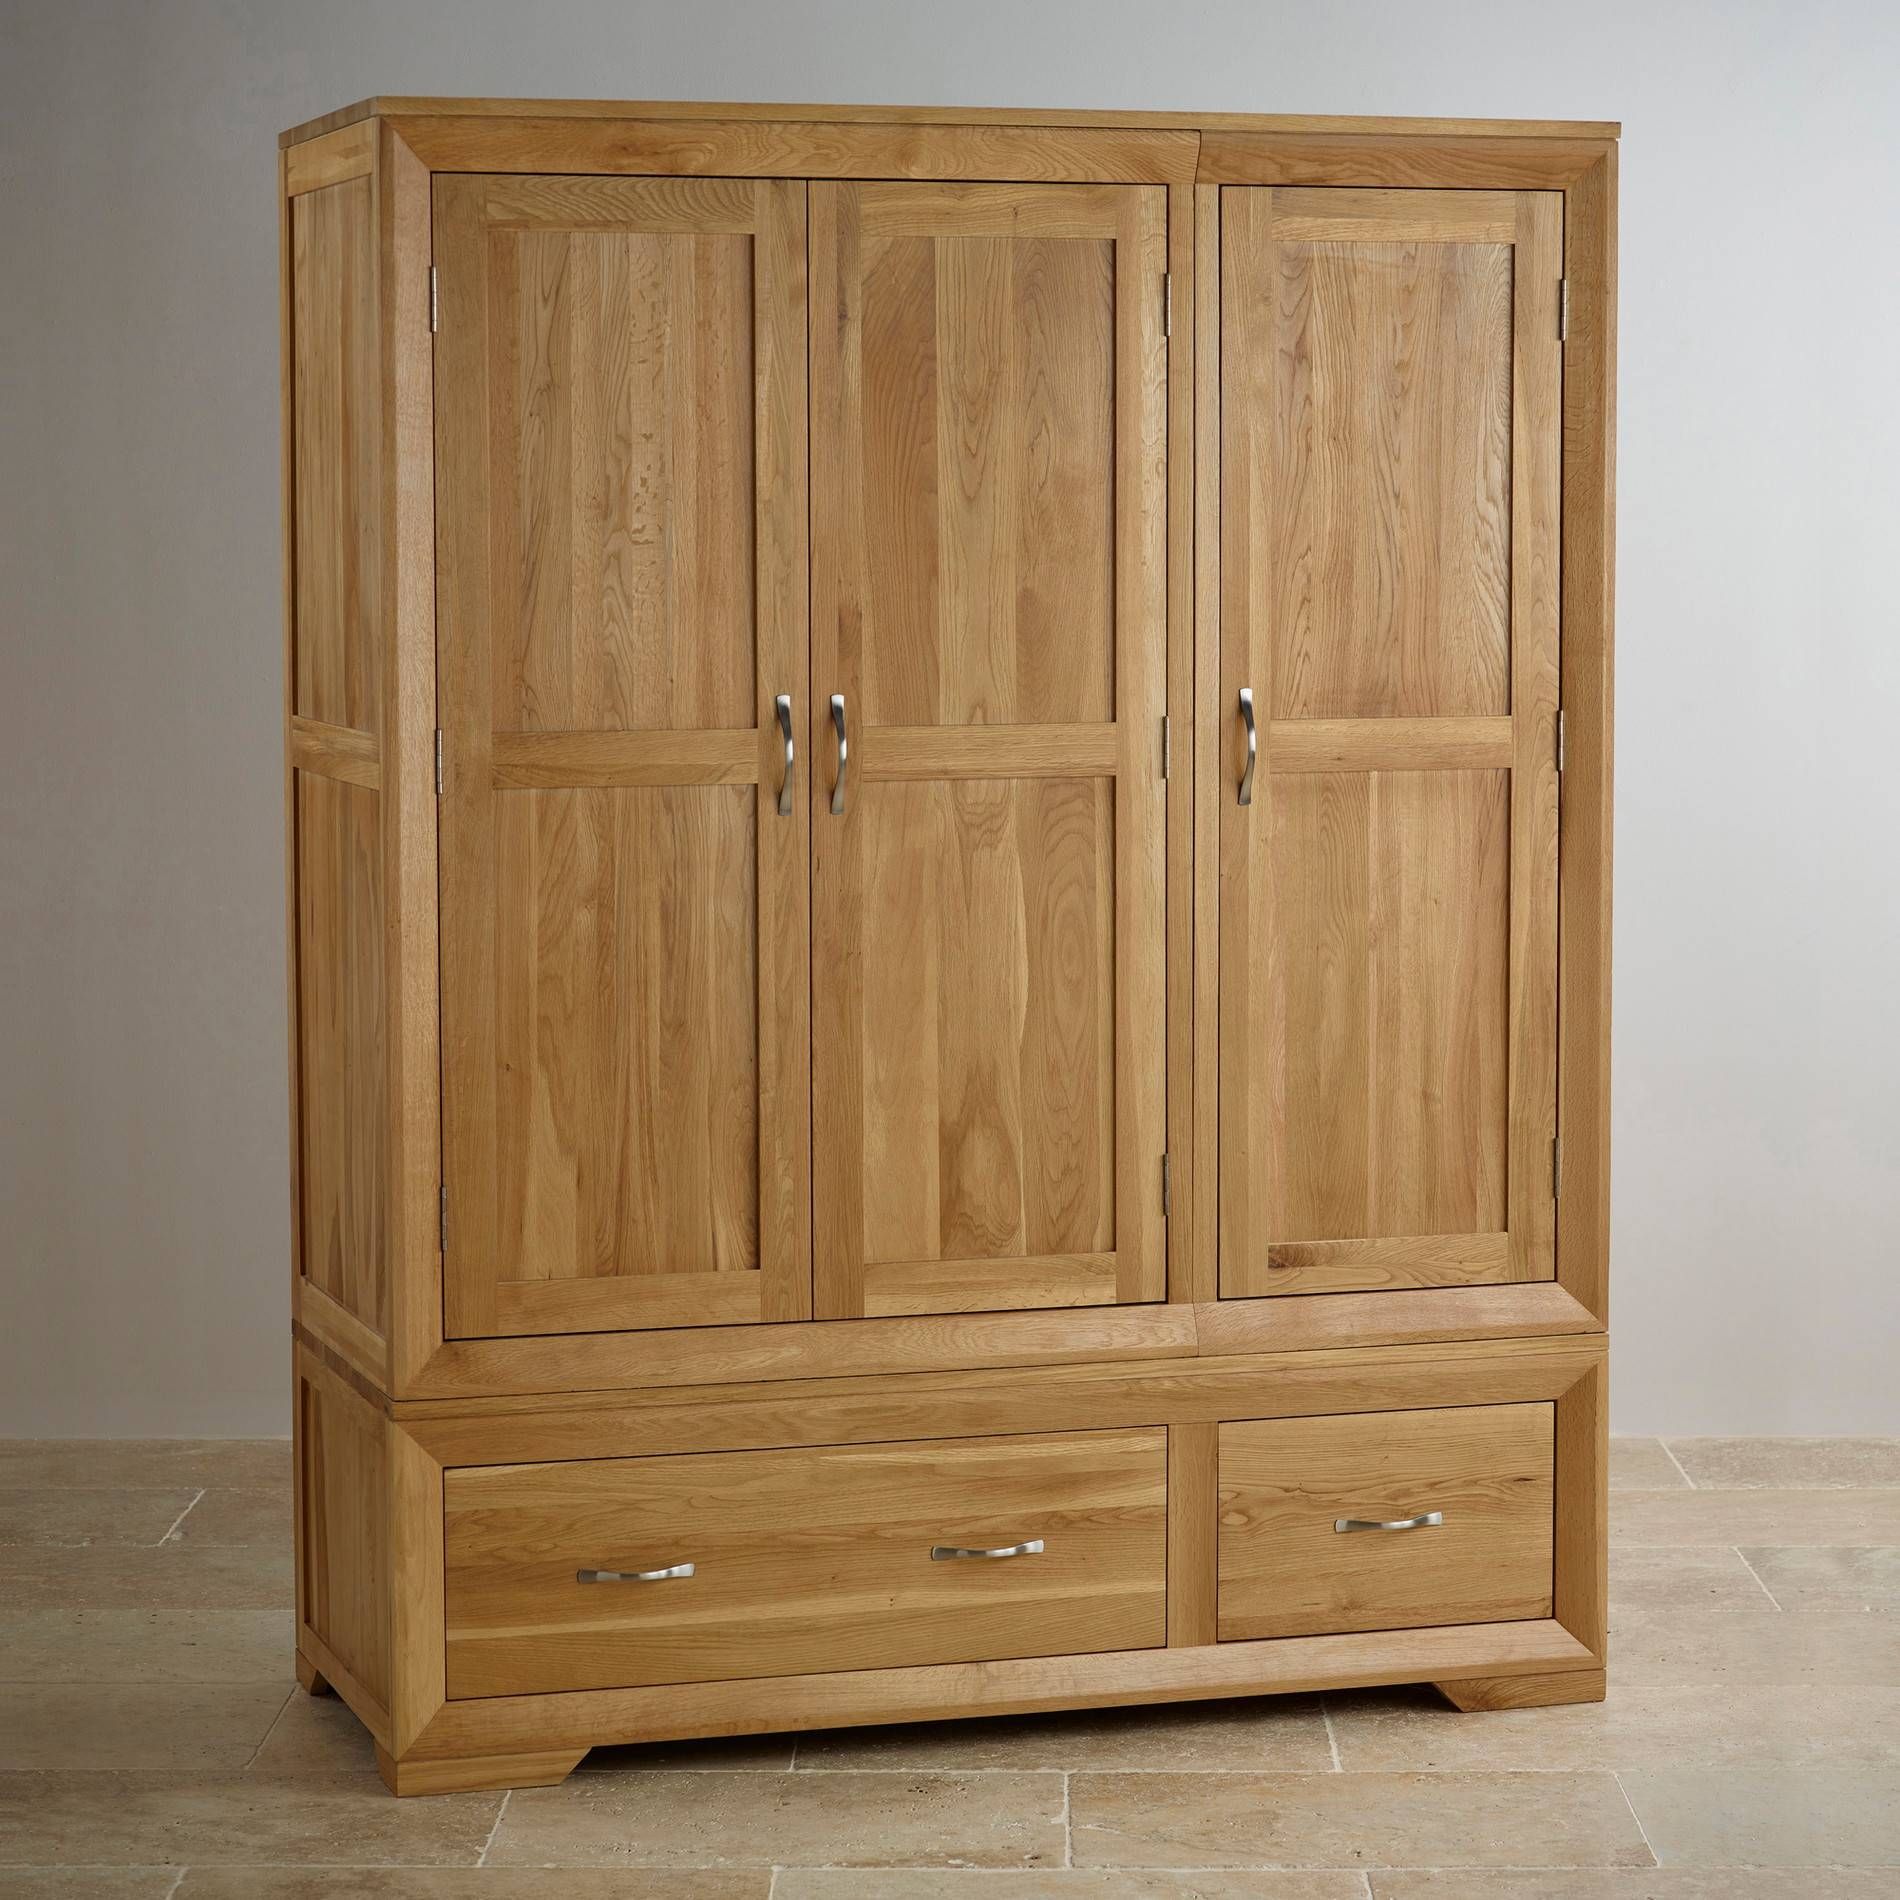 Bevel Natural Solid Oak Wardrobe | Bedroom Furniture Inside Self Assembly Wardrobes (View 12 of 15)